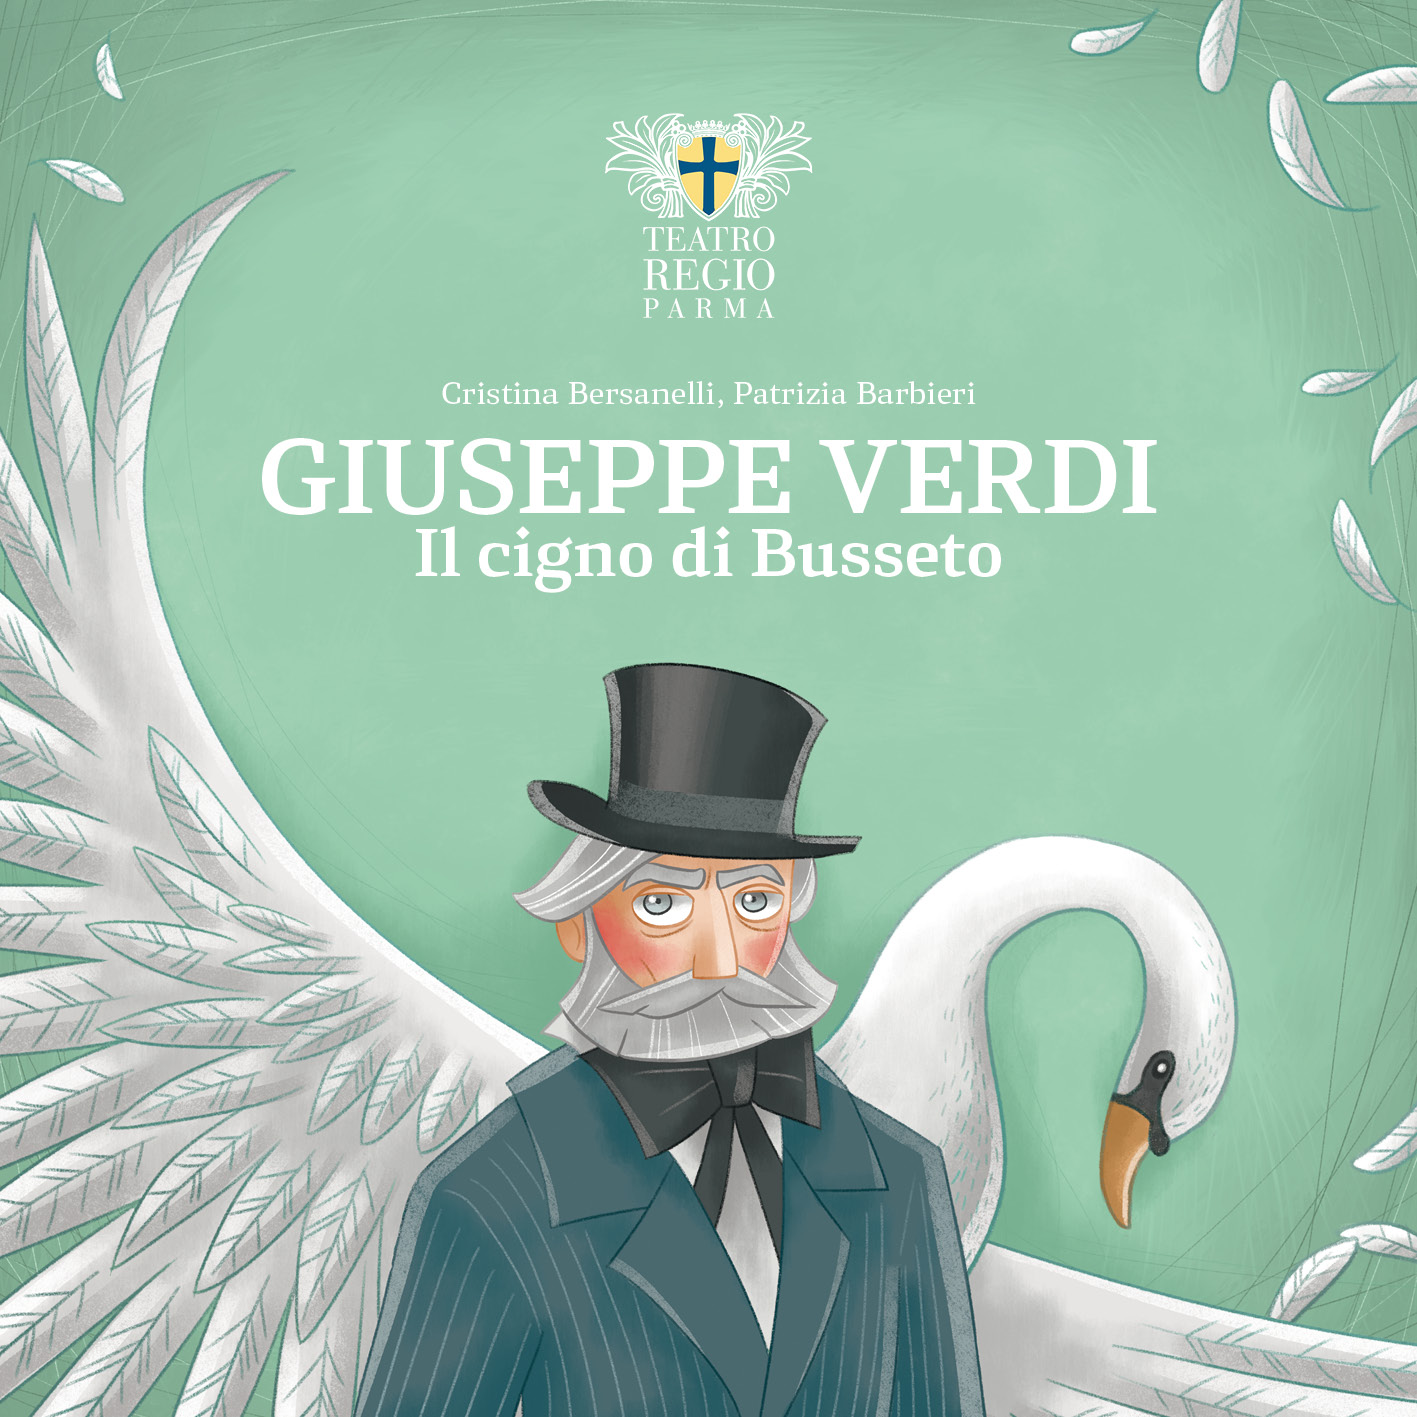 Giuseppe Verdi the Swan of Busseto